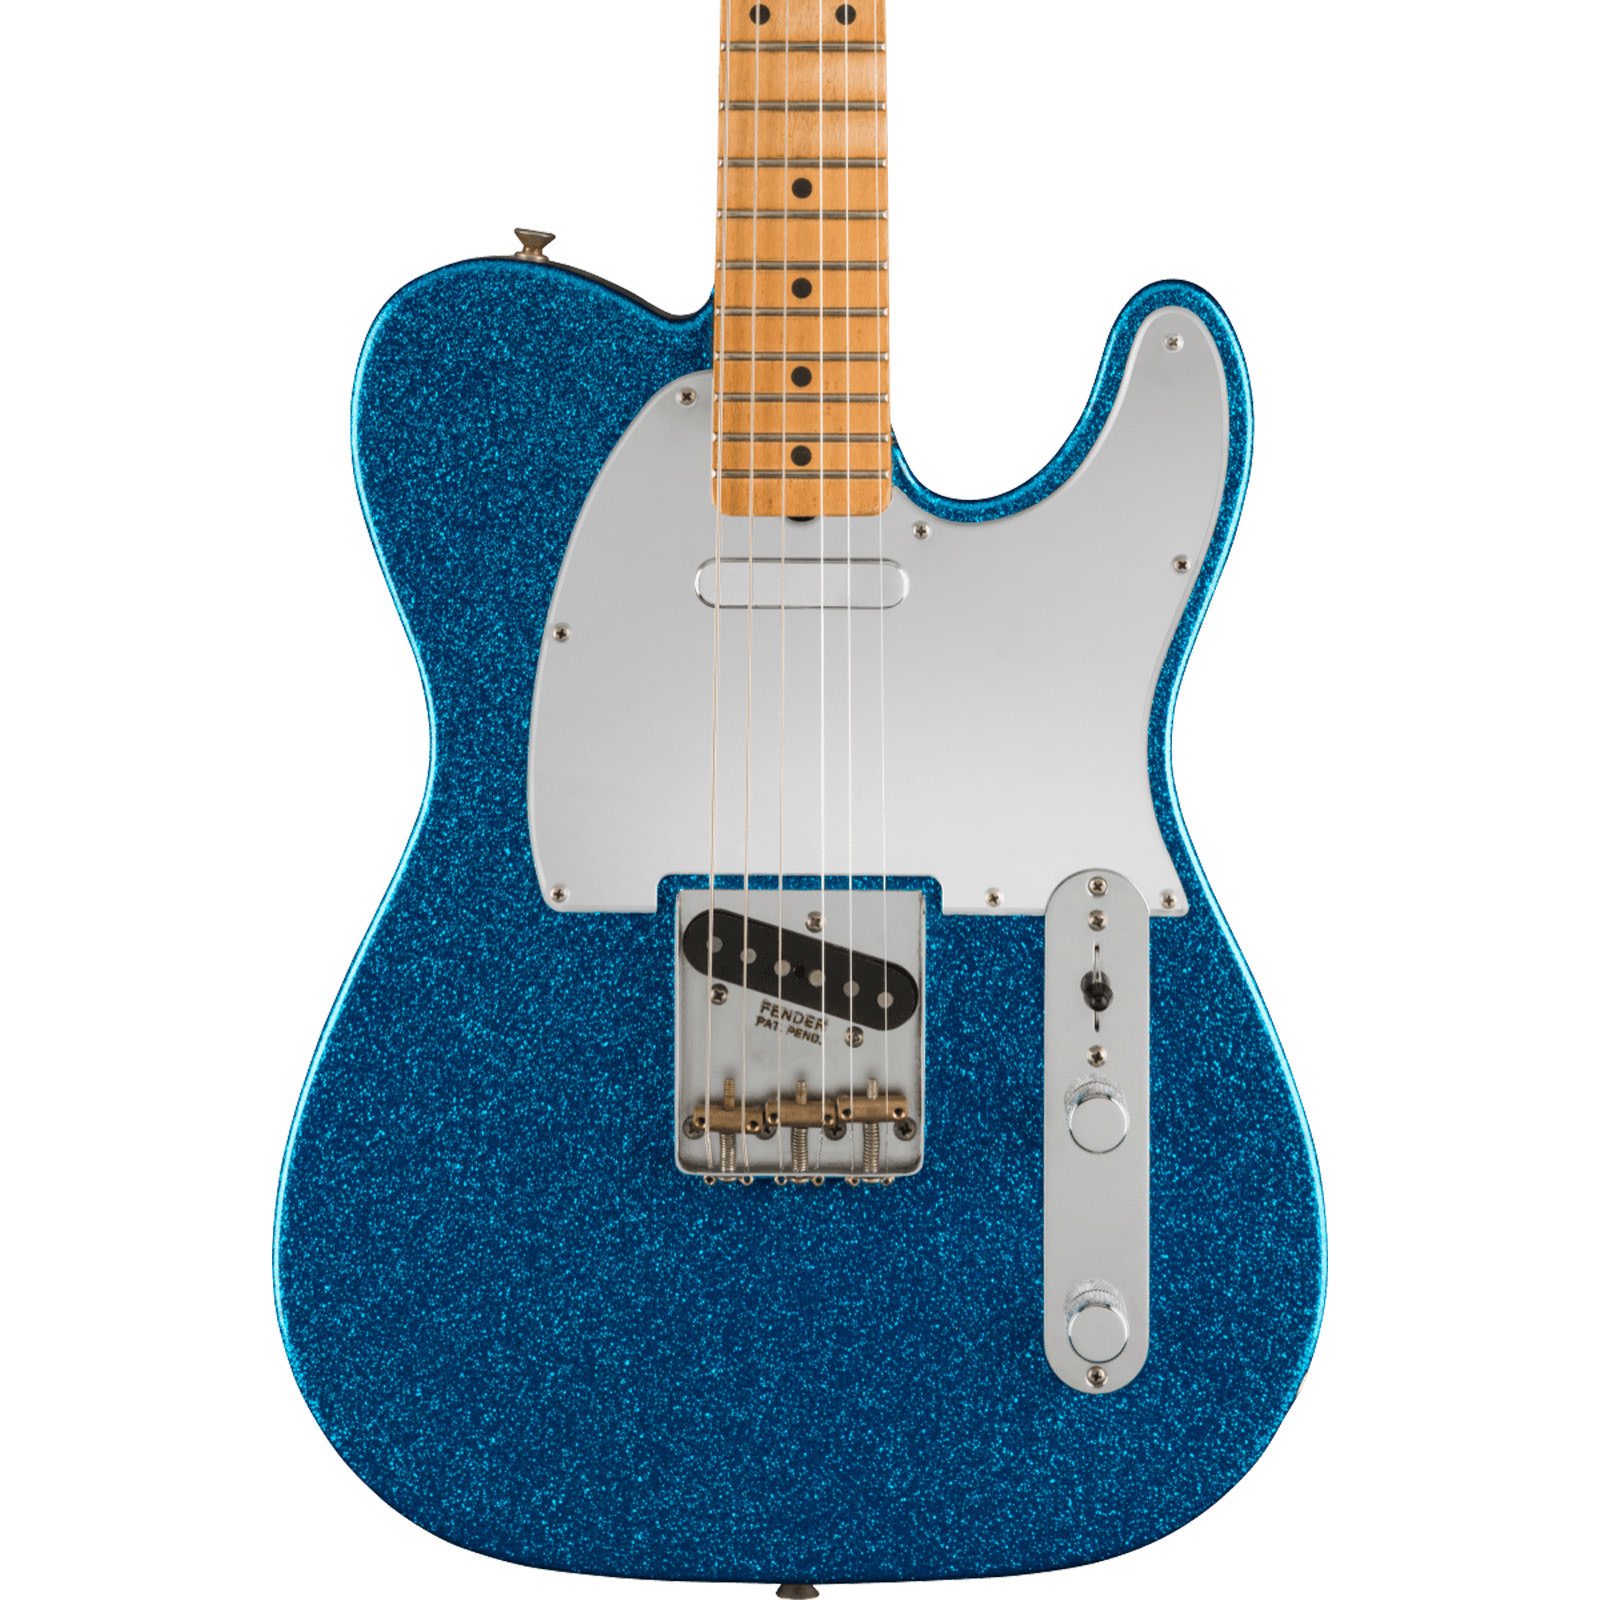 Fender J Mascis Telecaster - Bottle Rocket Blue Flake (shop damage)